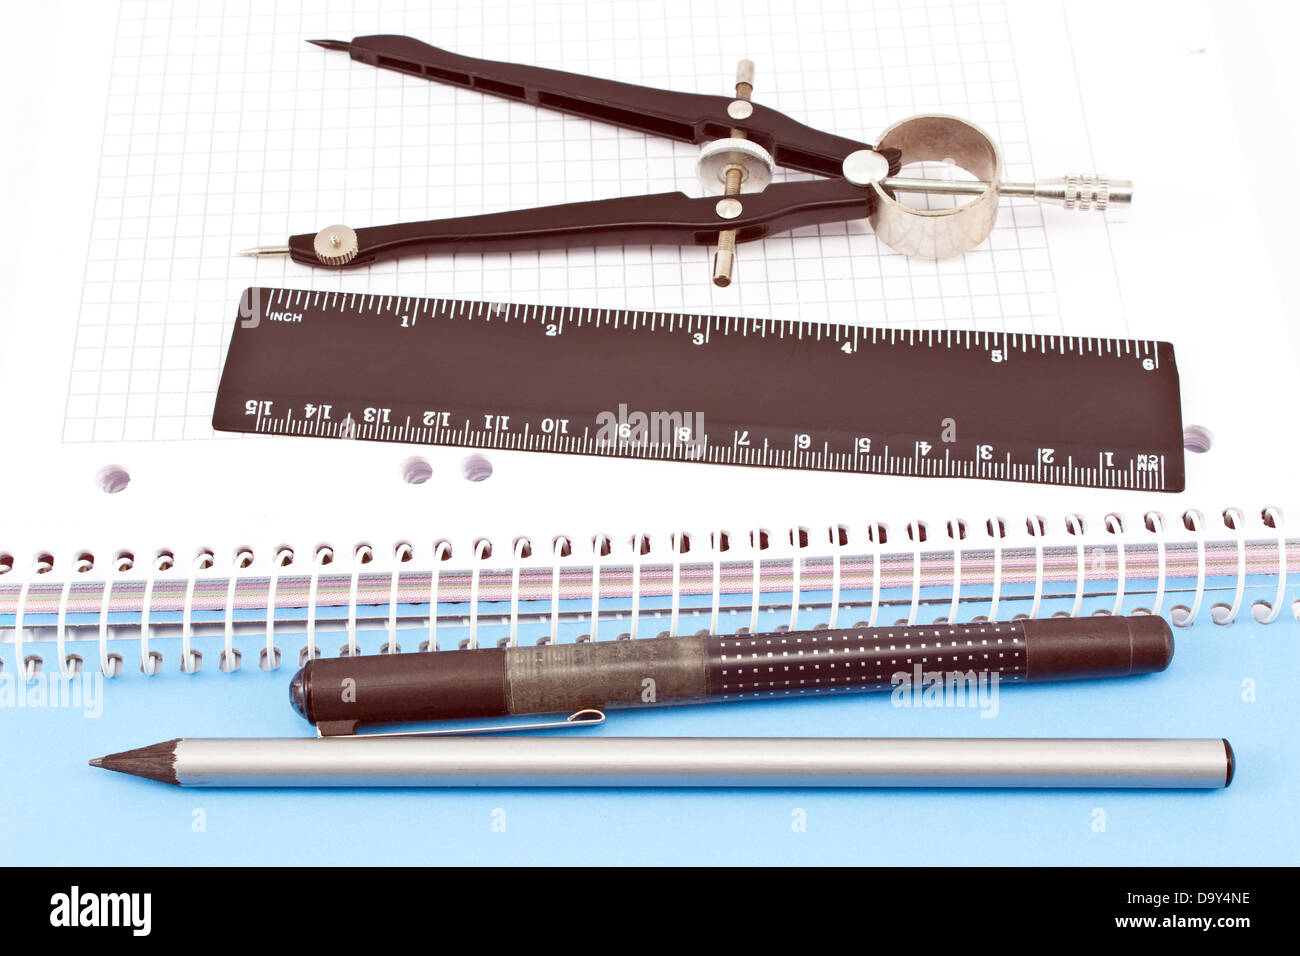 Crayon de bois, stylo, règle et compas de dessin sur carnet à spirales Banque D'Images